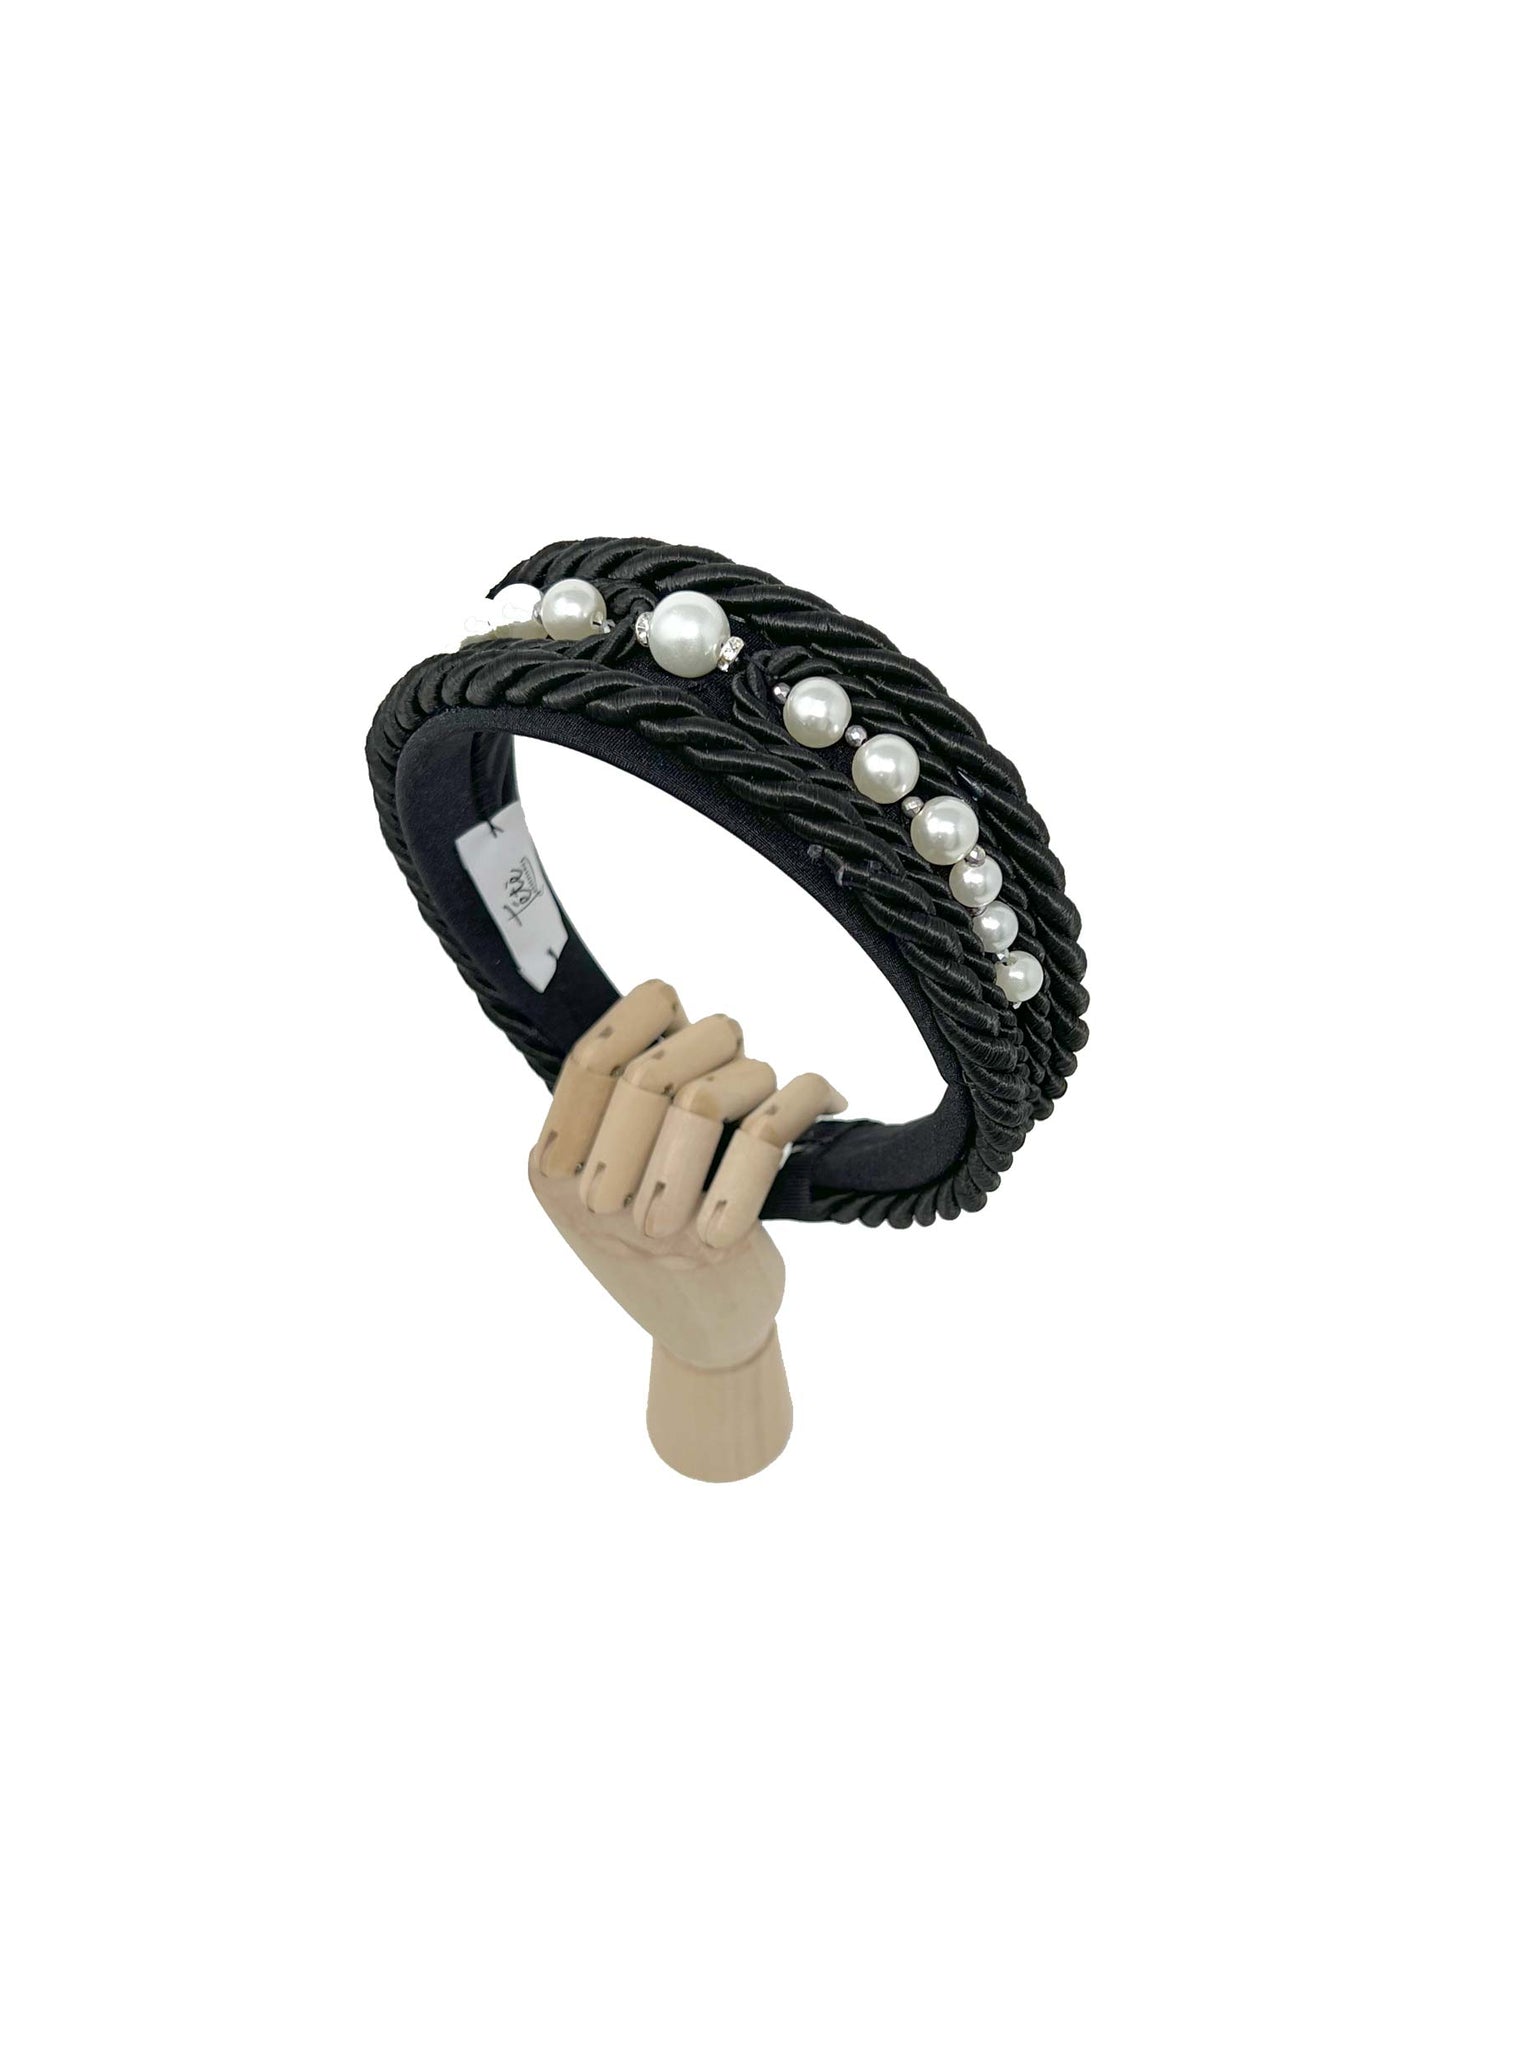 Black lanyard headband with pearls